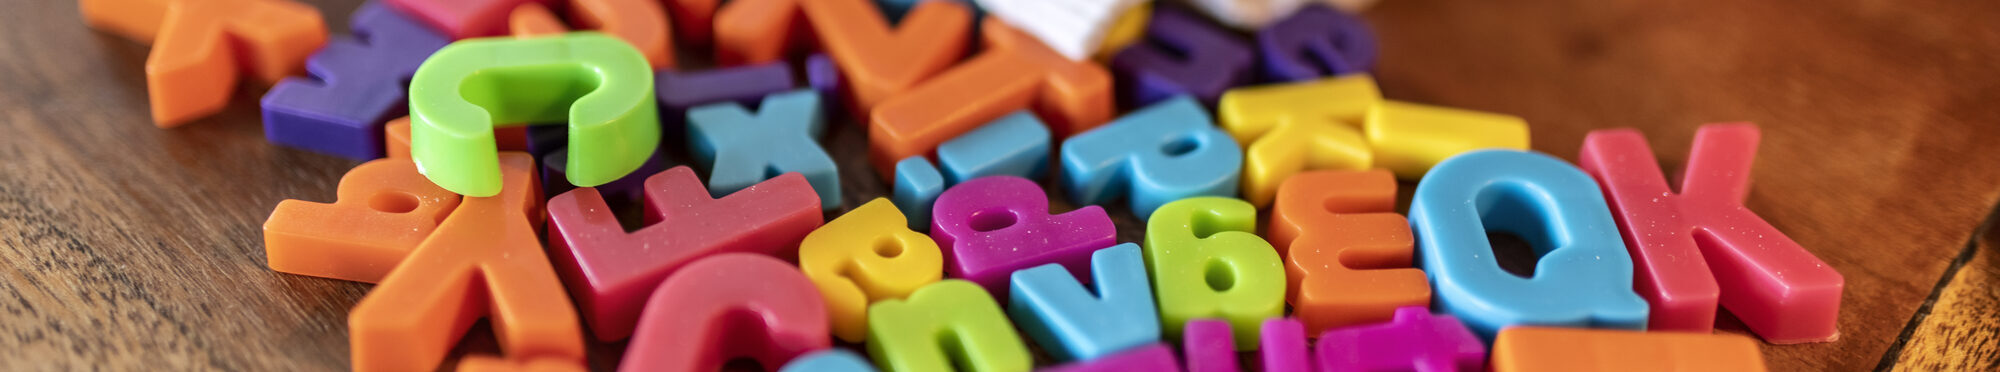 Buchstaben auf einem Tisch: Der Schritt von der Kita in die Schule ist für Kinder und Eltern groß.